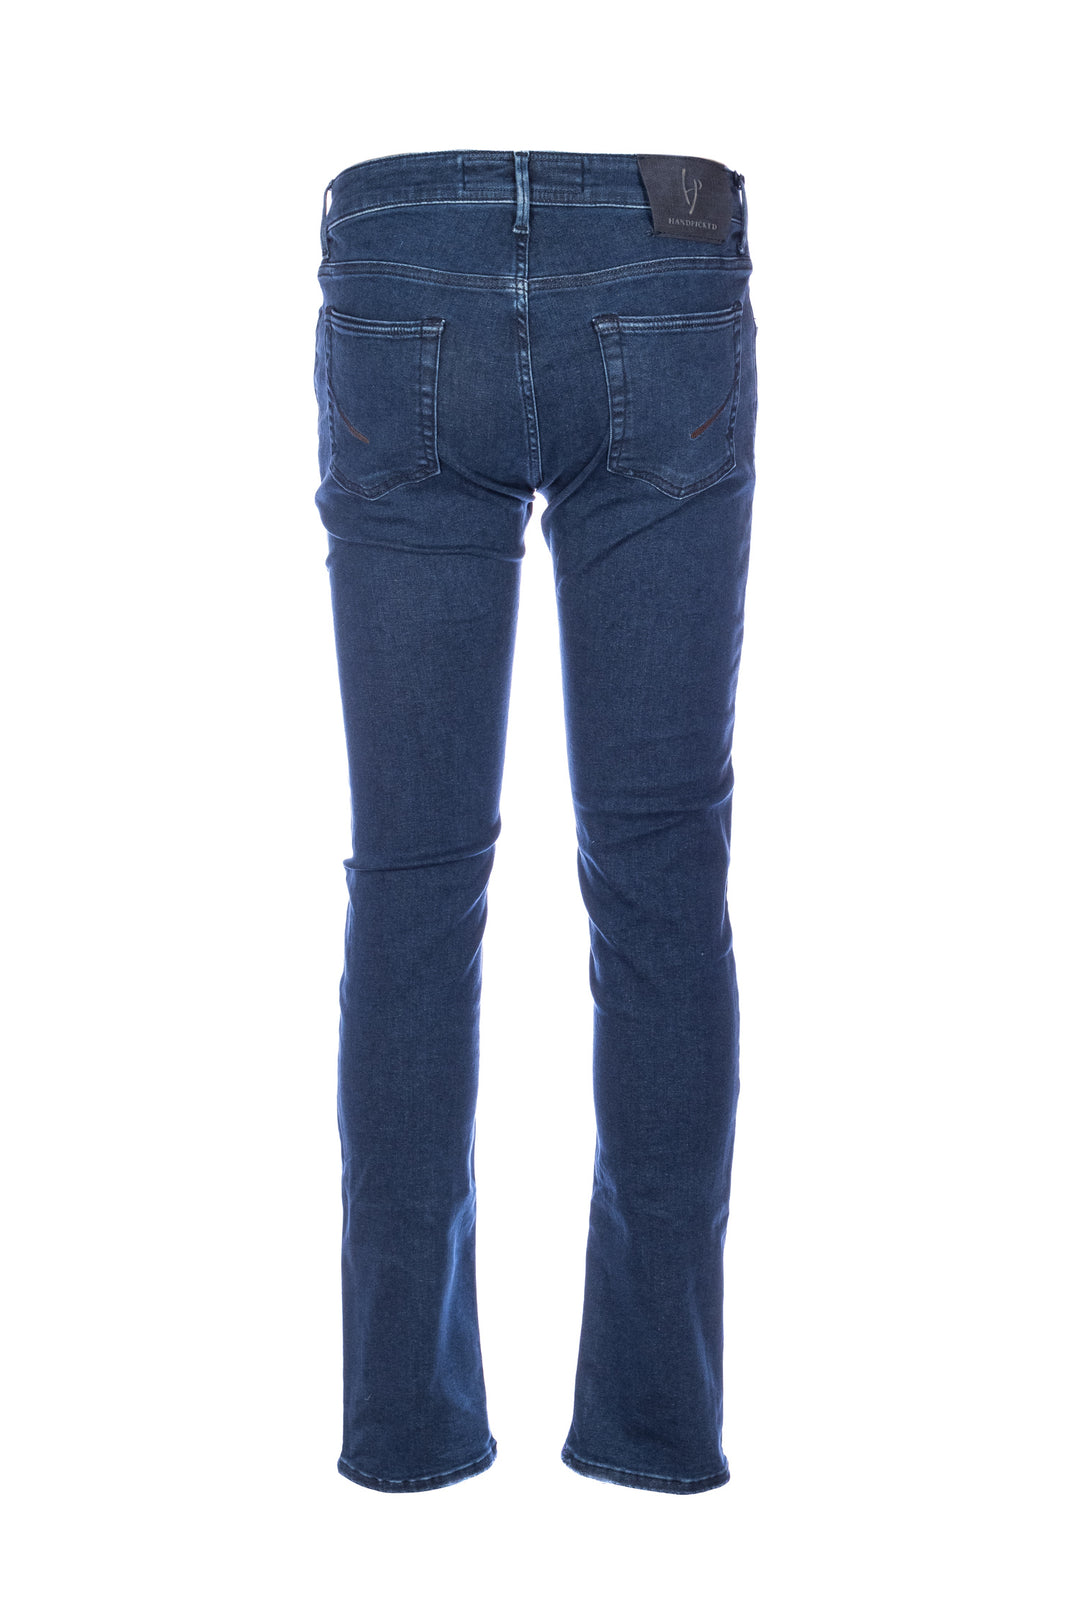 HANDPICKED Jeans 5 tasche “ORVIETO” in denim elasticizzato - Mancinelli 1954